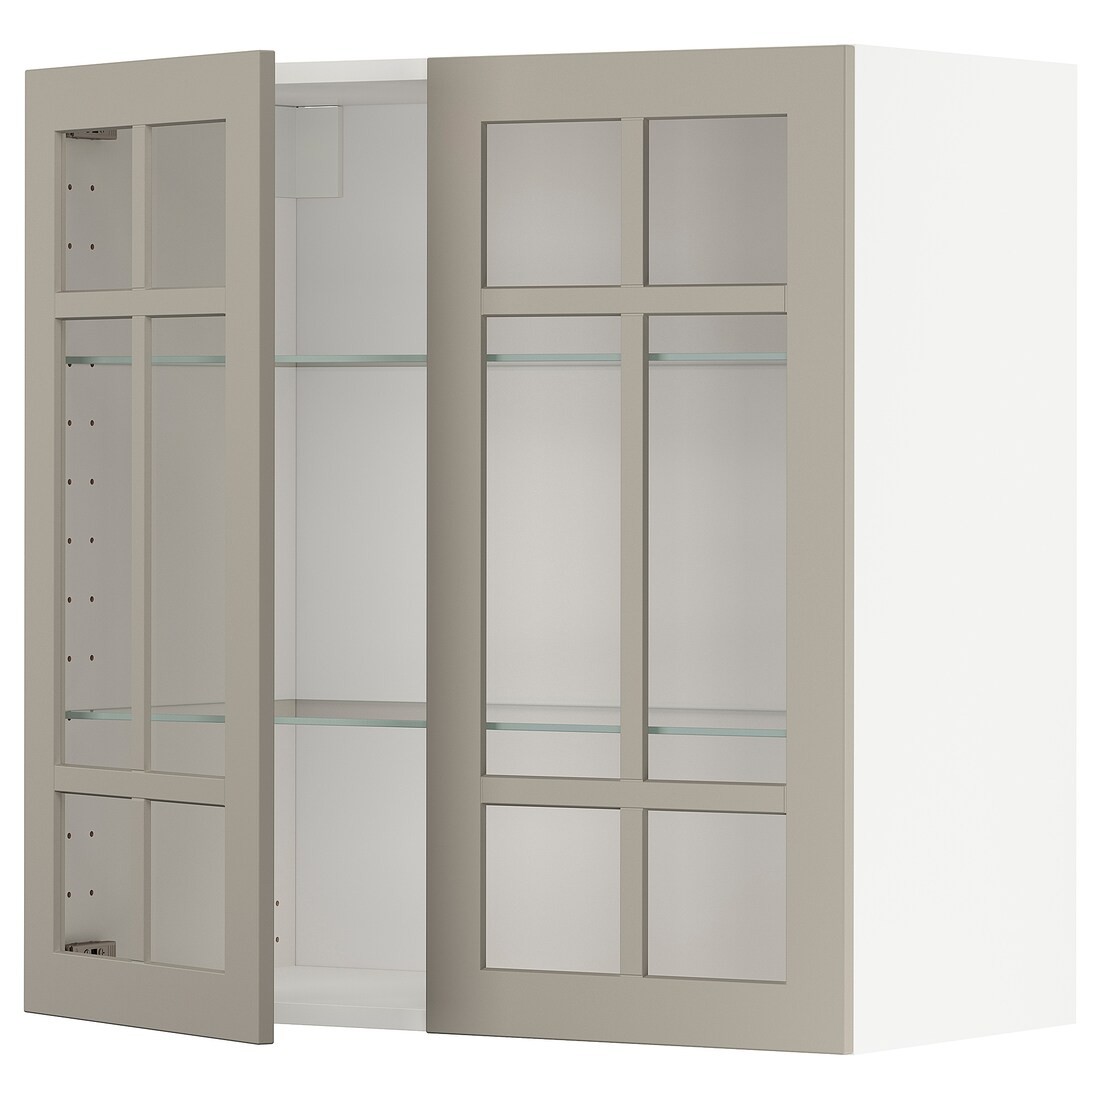 IKEA METOD МЕТОД Навесной шкаф, белый / Stensund бежевый, 80x80 см 89456794 | 894.567.94